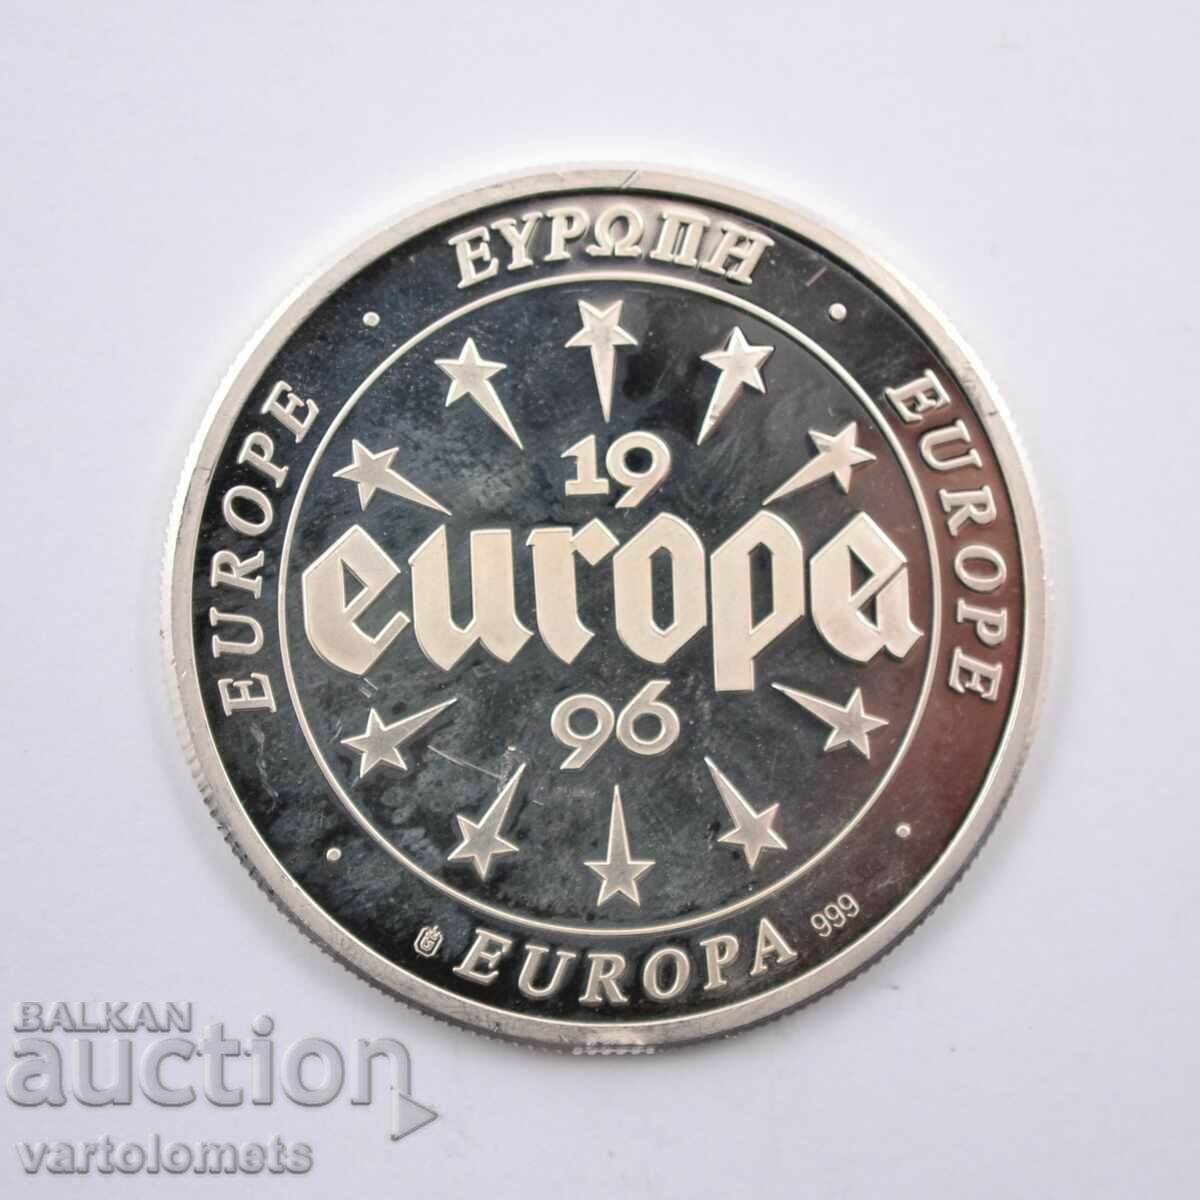 Ασήμι 10 ευρώ Ιρλανδία 1996 19,9 g 999 πρ.